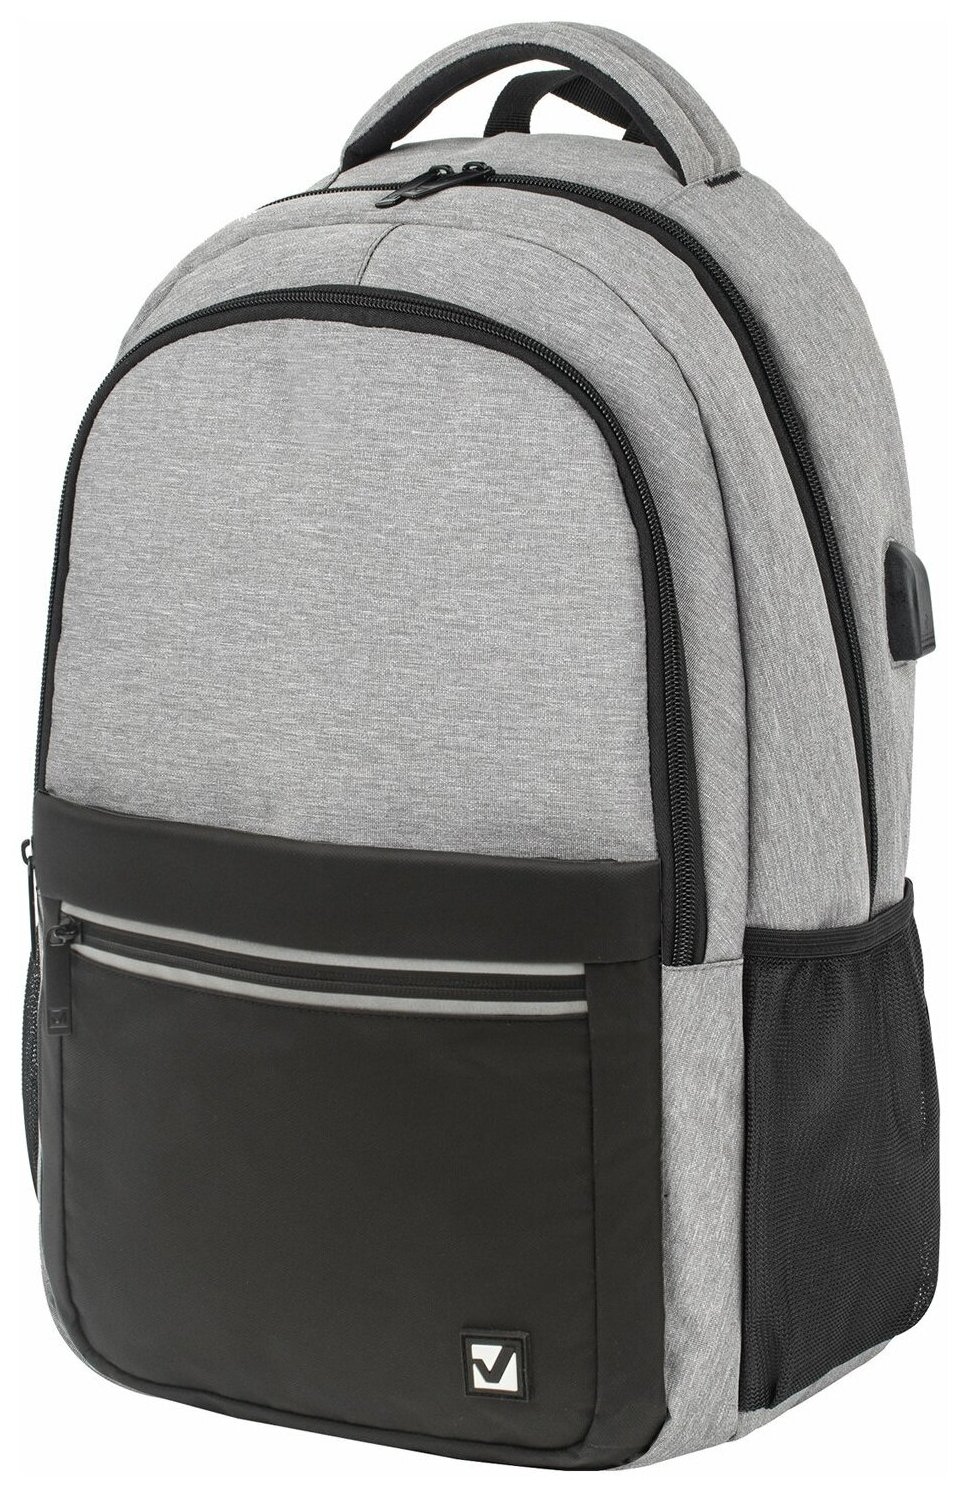 Рюкзак BRAUBERG URBAN универсальный, с отделением для ноутбука, USB-порт, Detroit, серый, 46х30х16 см, 229894